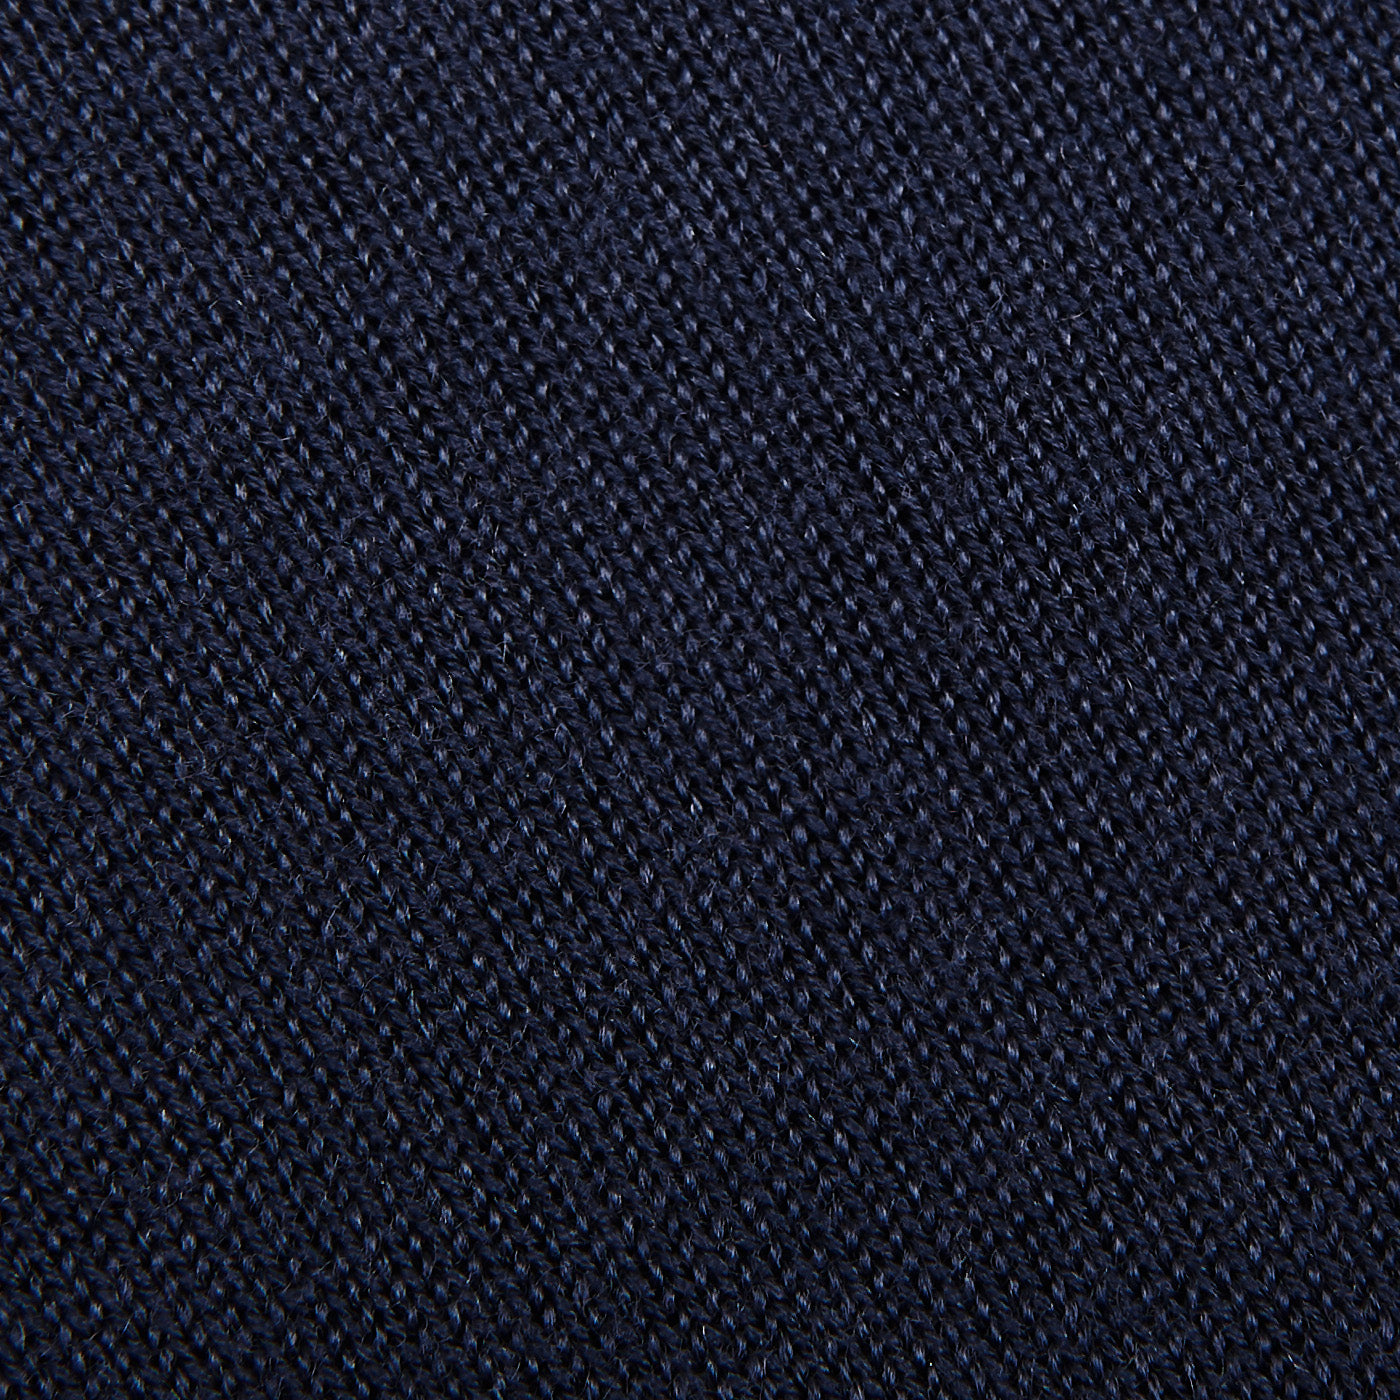 Mauro Ottaviani Dark Blue 16 Gauge Merino Wool Polo Shirt Fabric